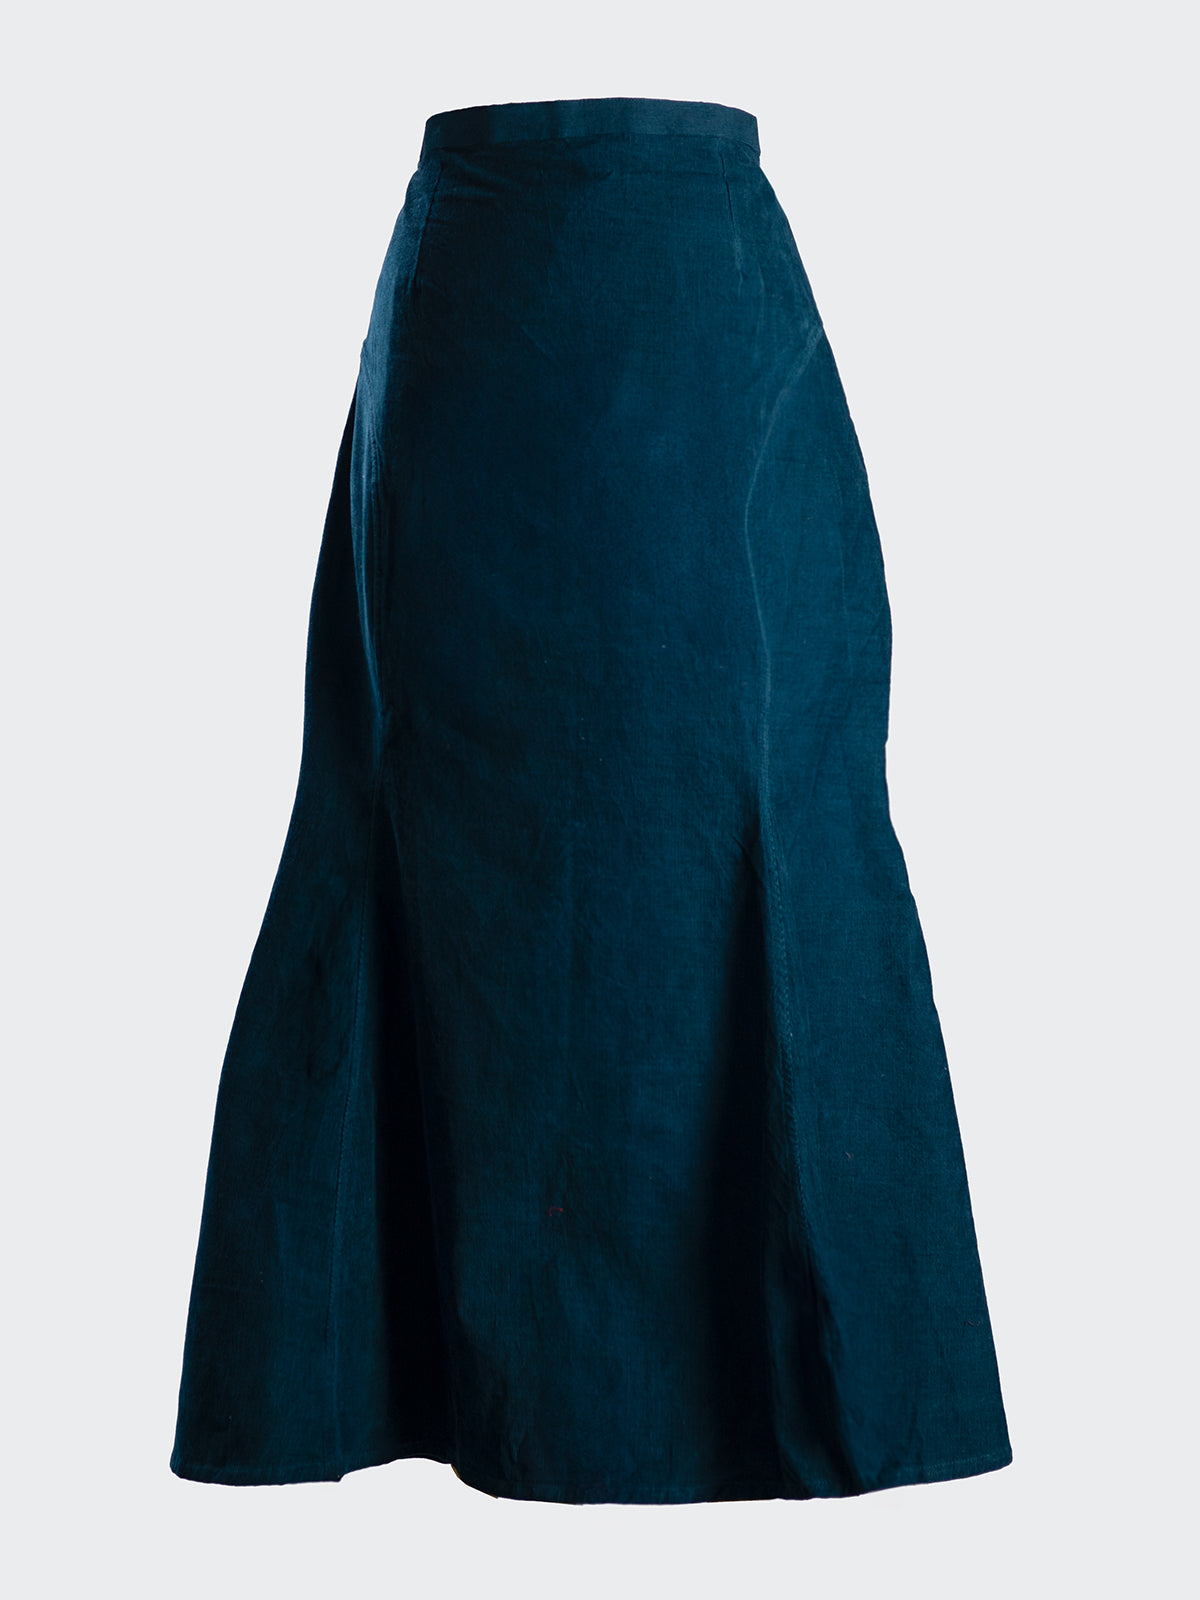 Mermaid Skirt - Peacock Blue